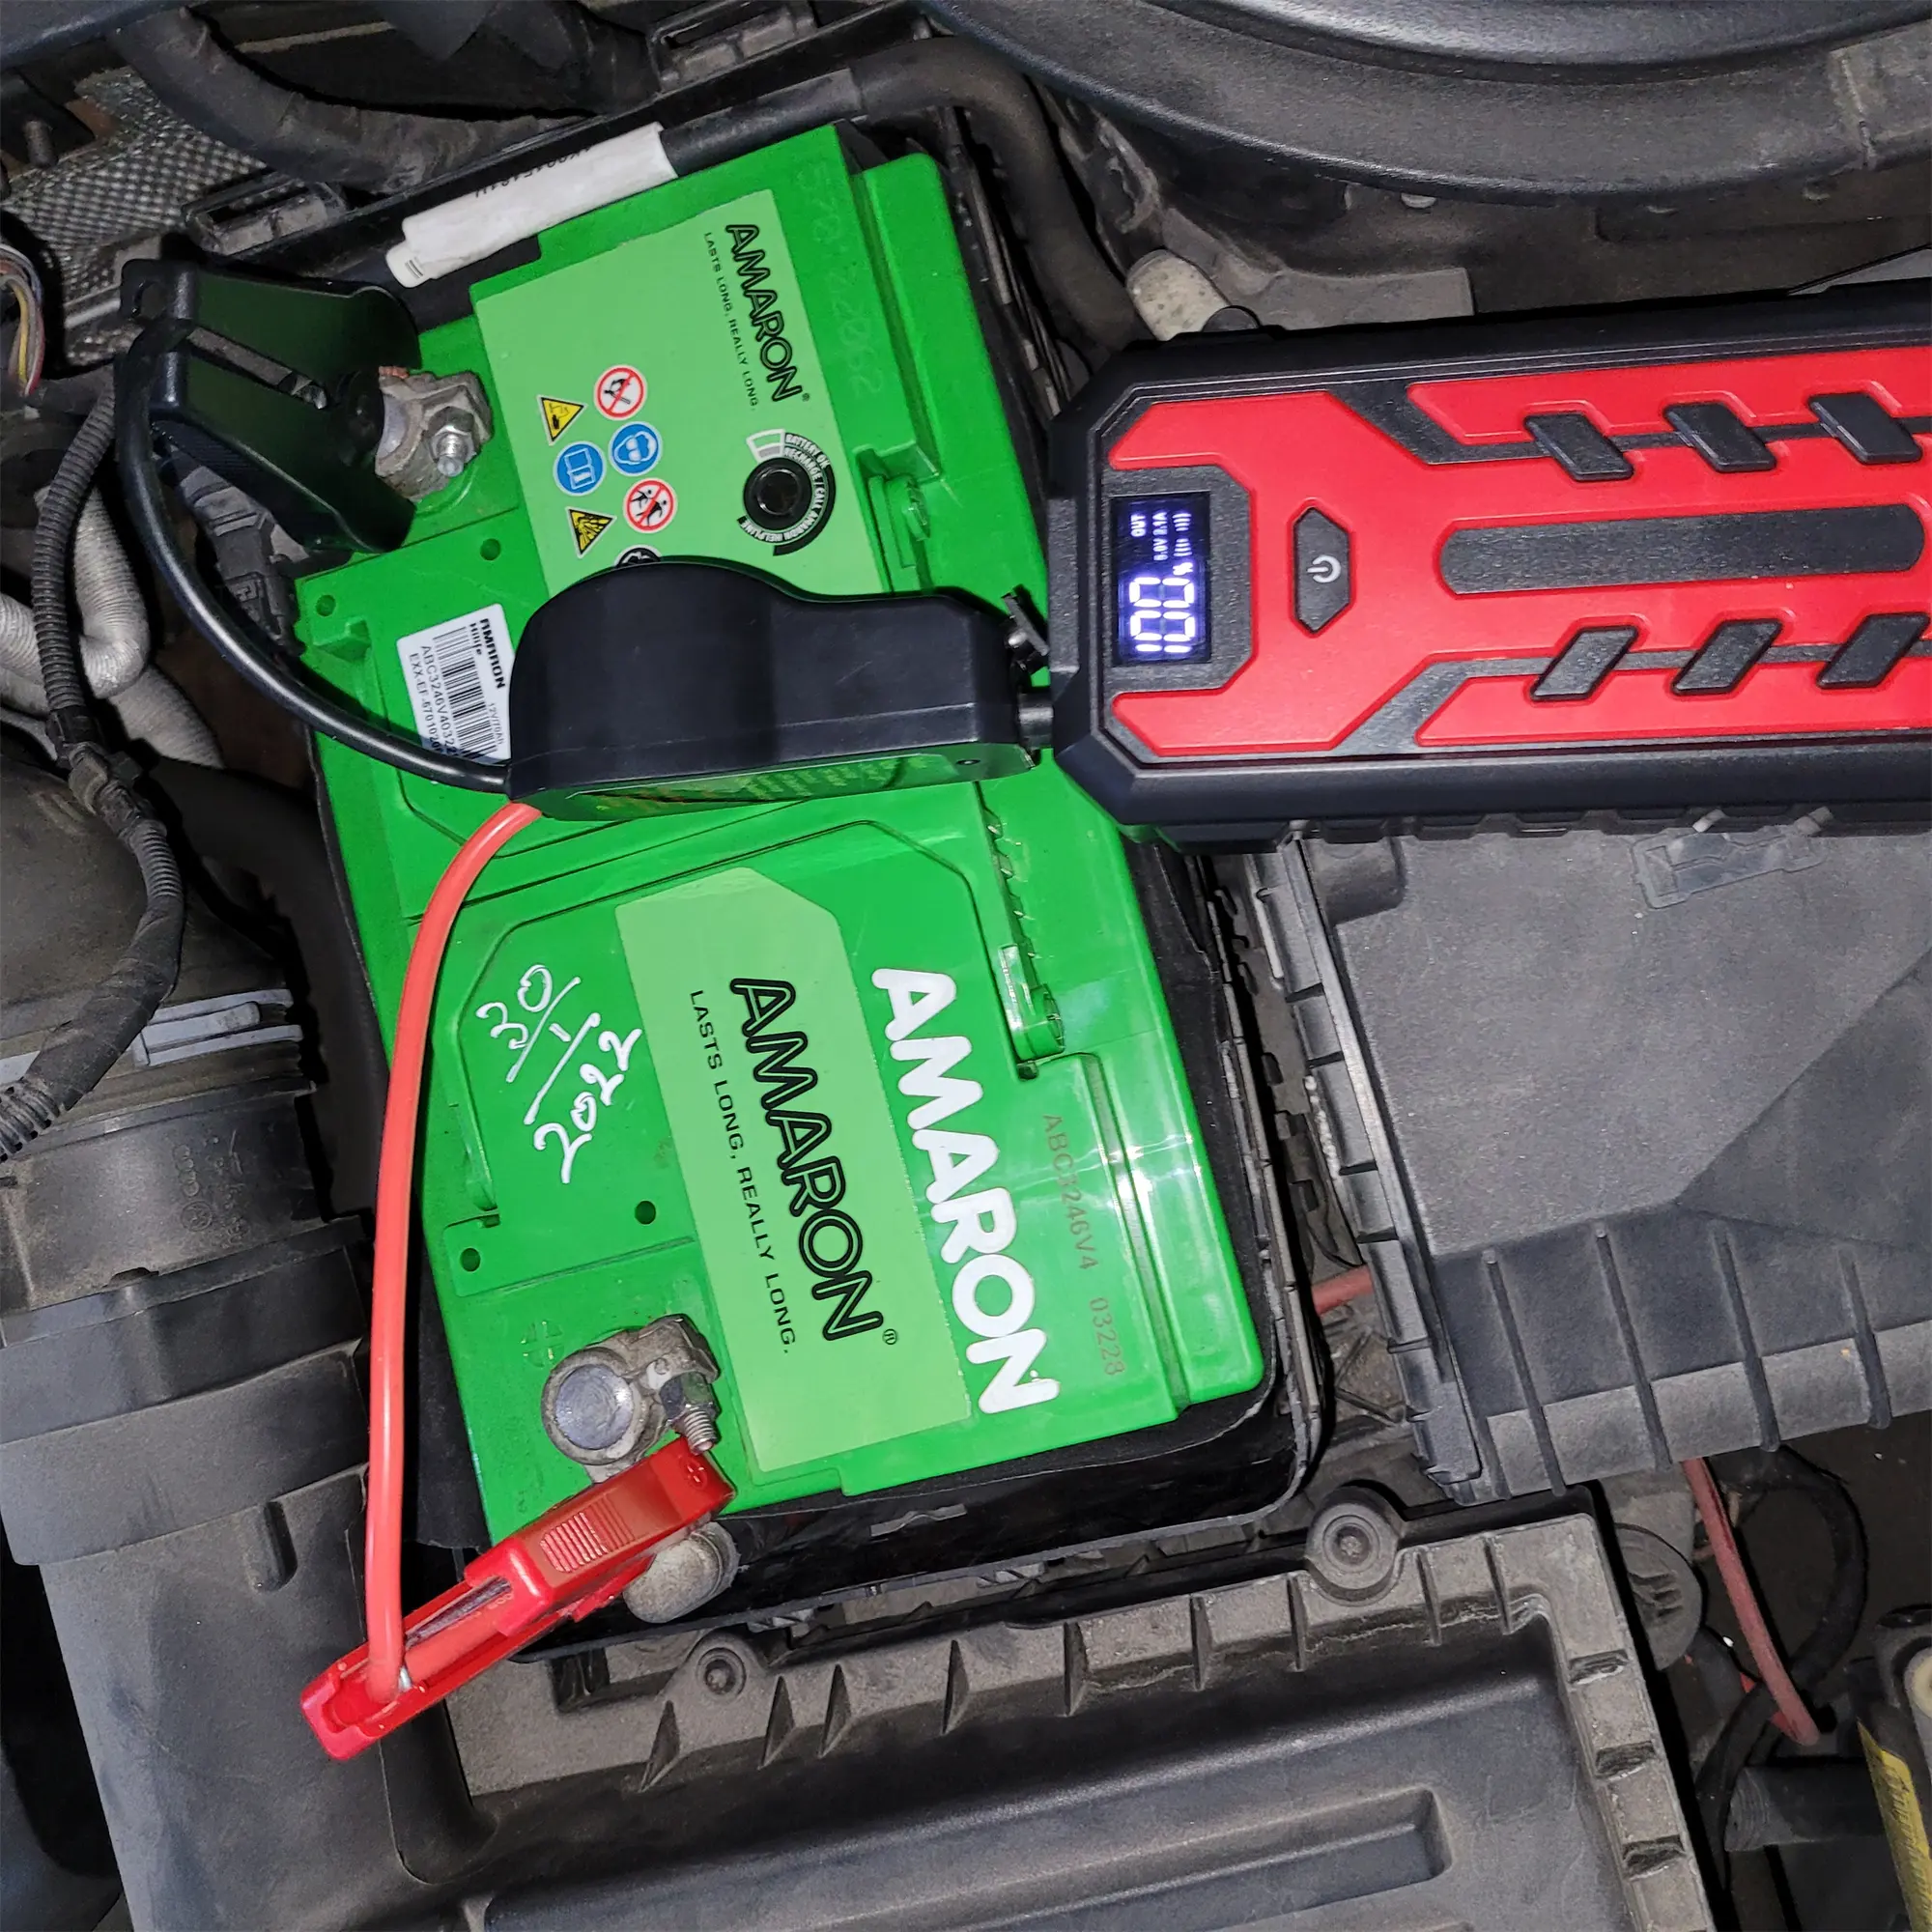 Arrancador de batería portátil de coche, Banco de energía de coche, cargador portátil compacto, arrancador de batería